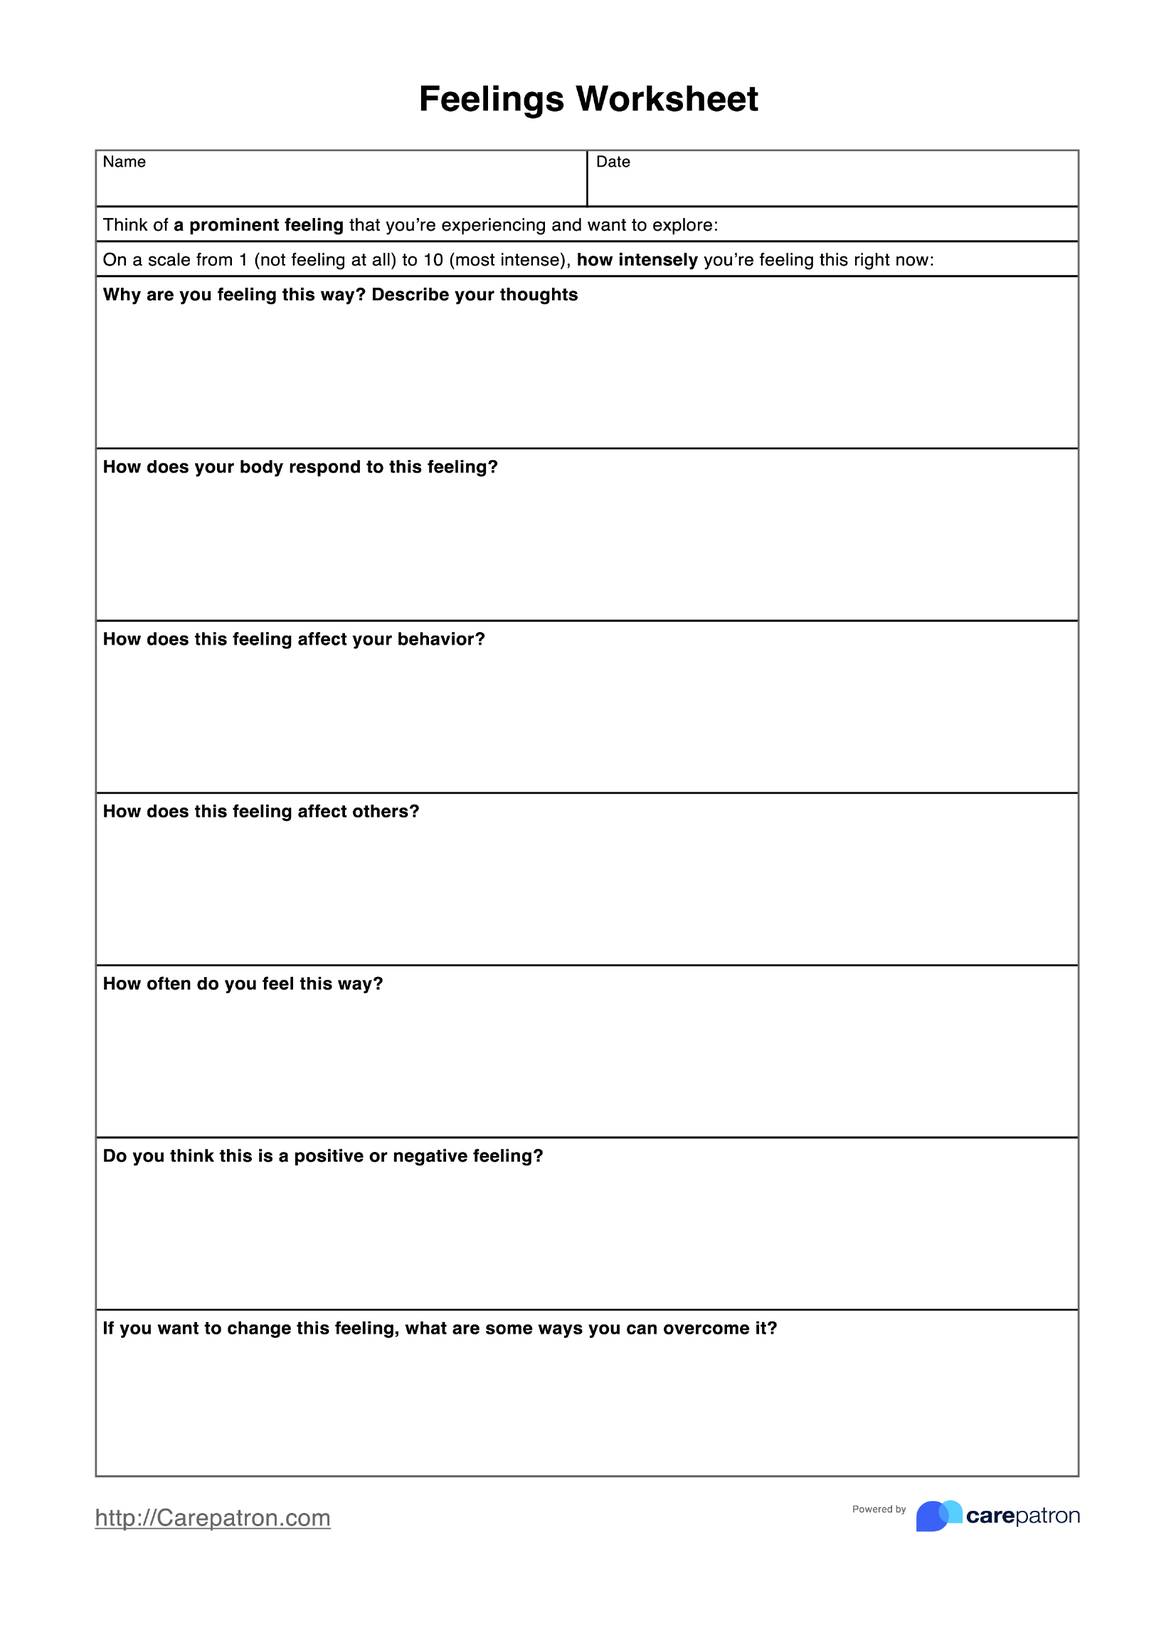 Feelings Worksheets PDF Example